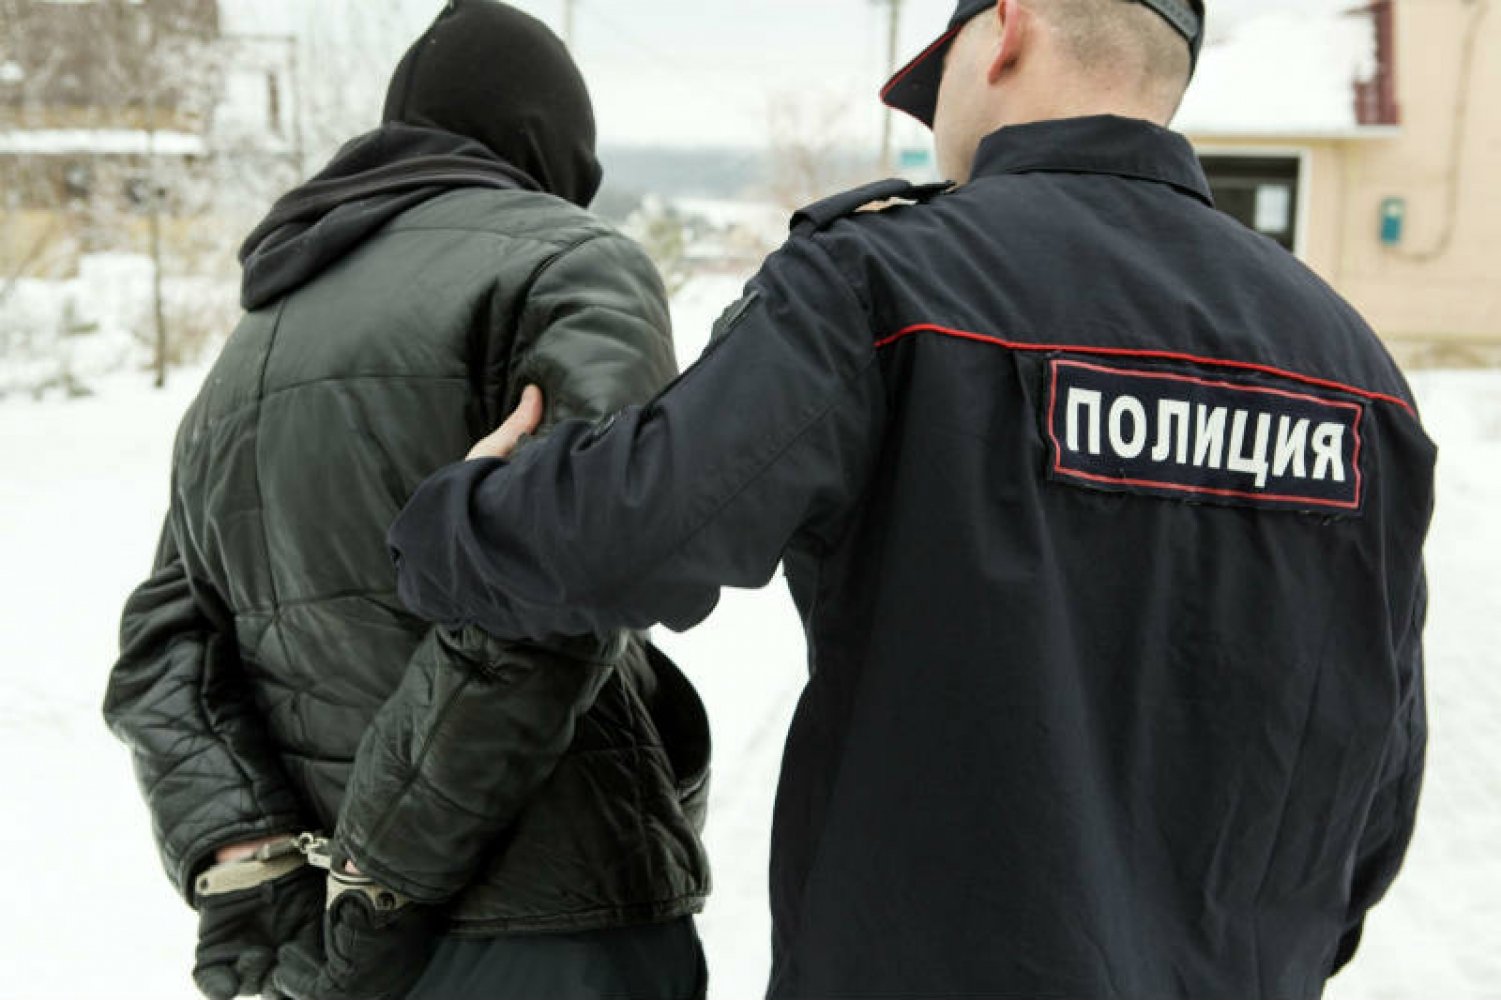 В Вавоже арестовали местного жителя, который из мести избил полицейского